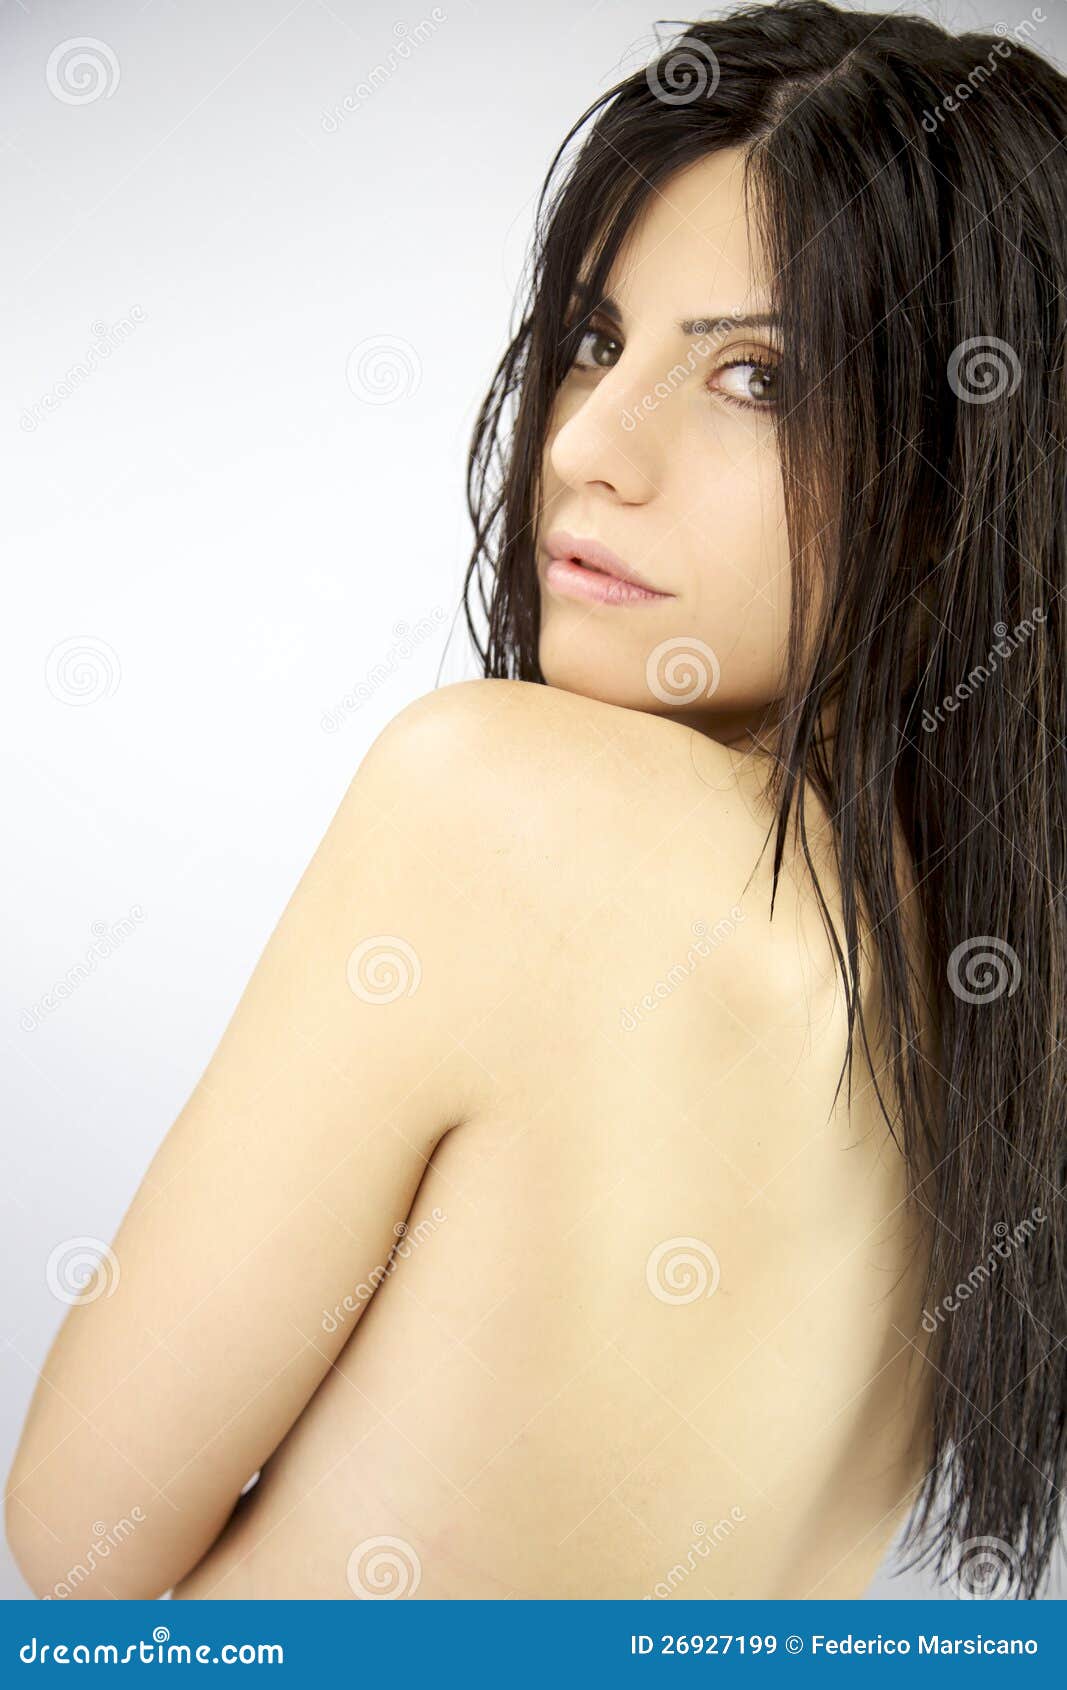 Gorgeous Naked Women Pics 48